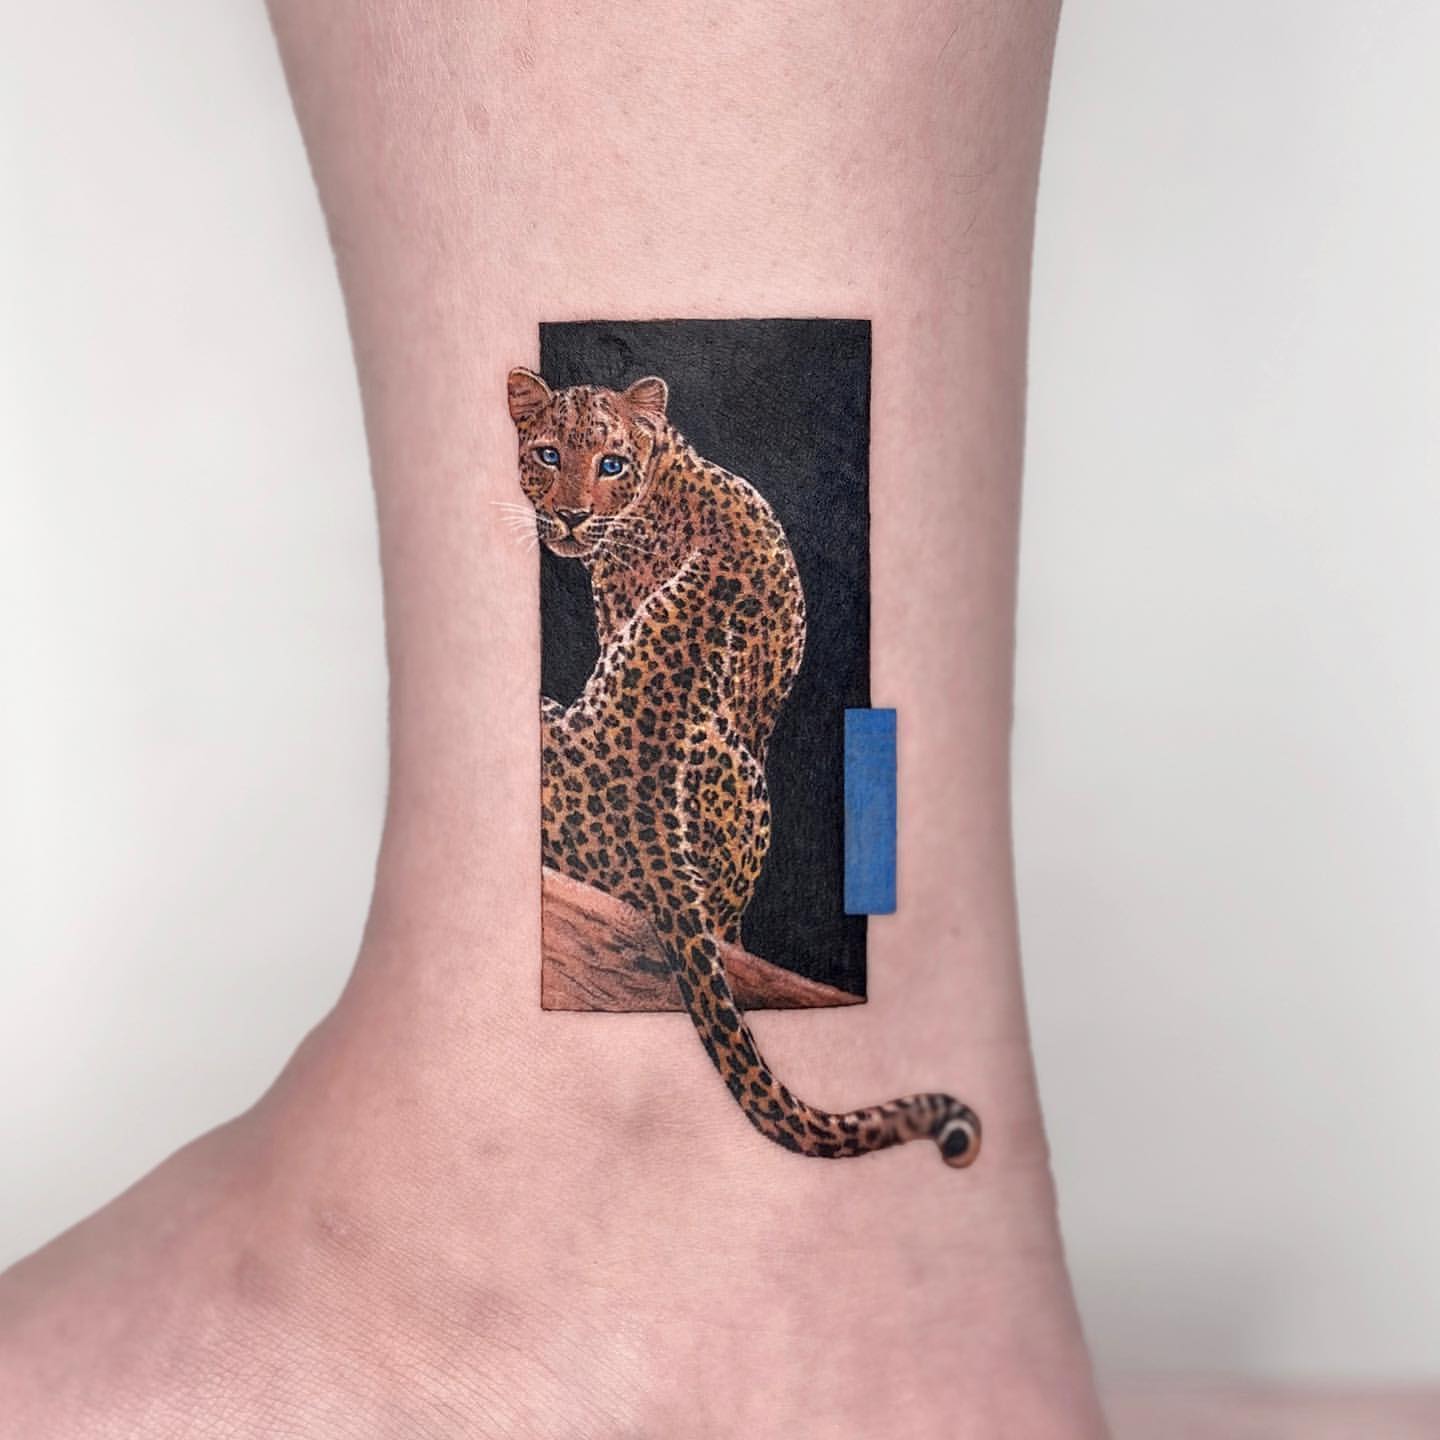 Leopard and Jaguar Tattoo Ideas 1